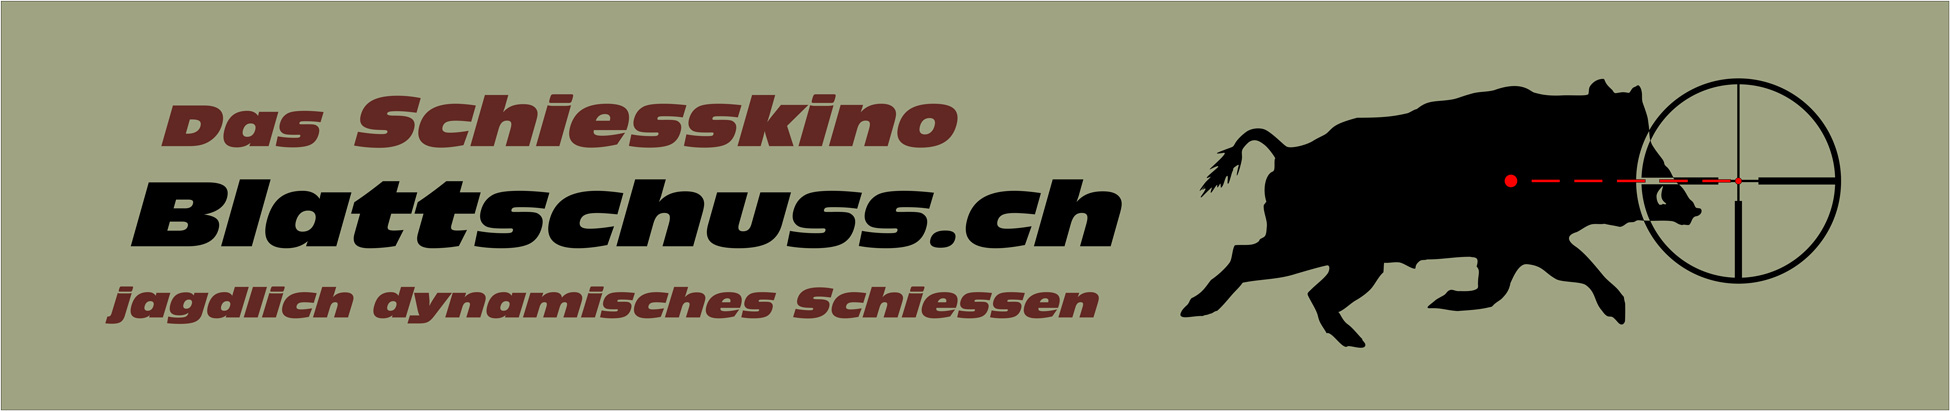 Schiesskino Blattschuss.ch